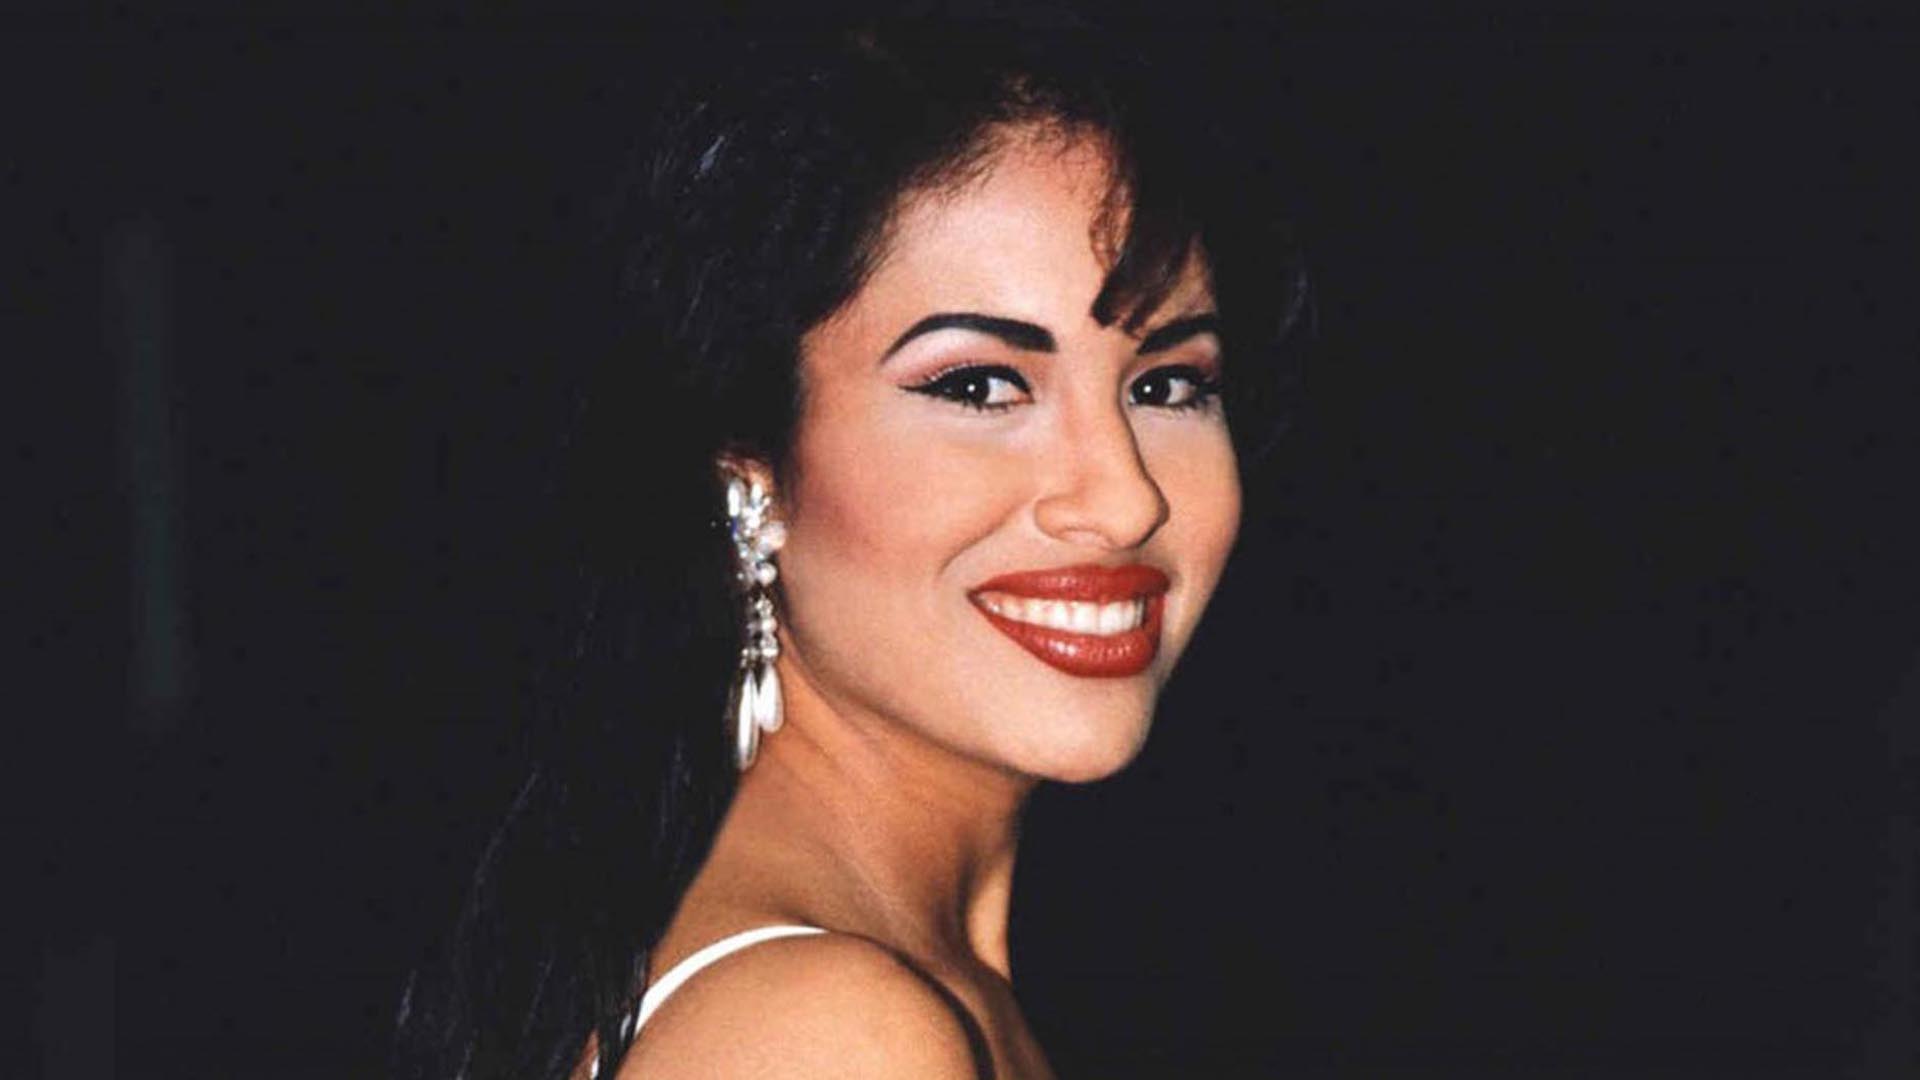 Esta fue la fotografía inédita de Selena Quintanilla que compartió su viudo Chris Pérez